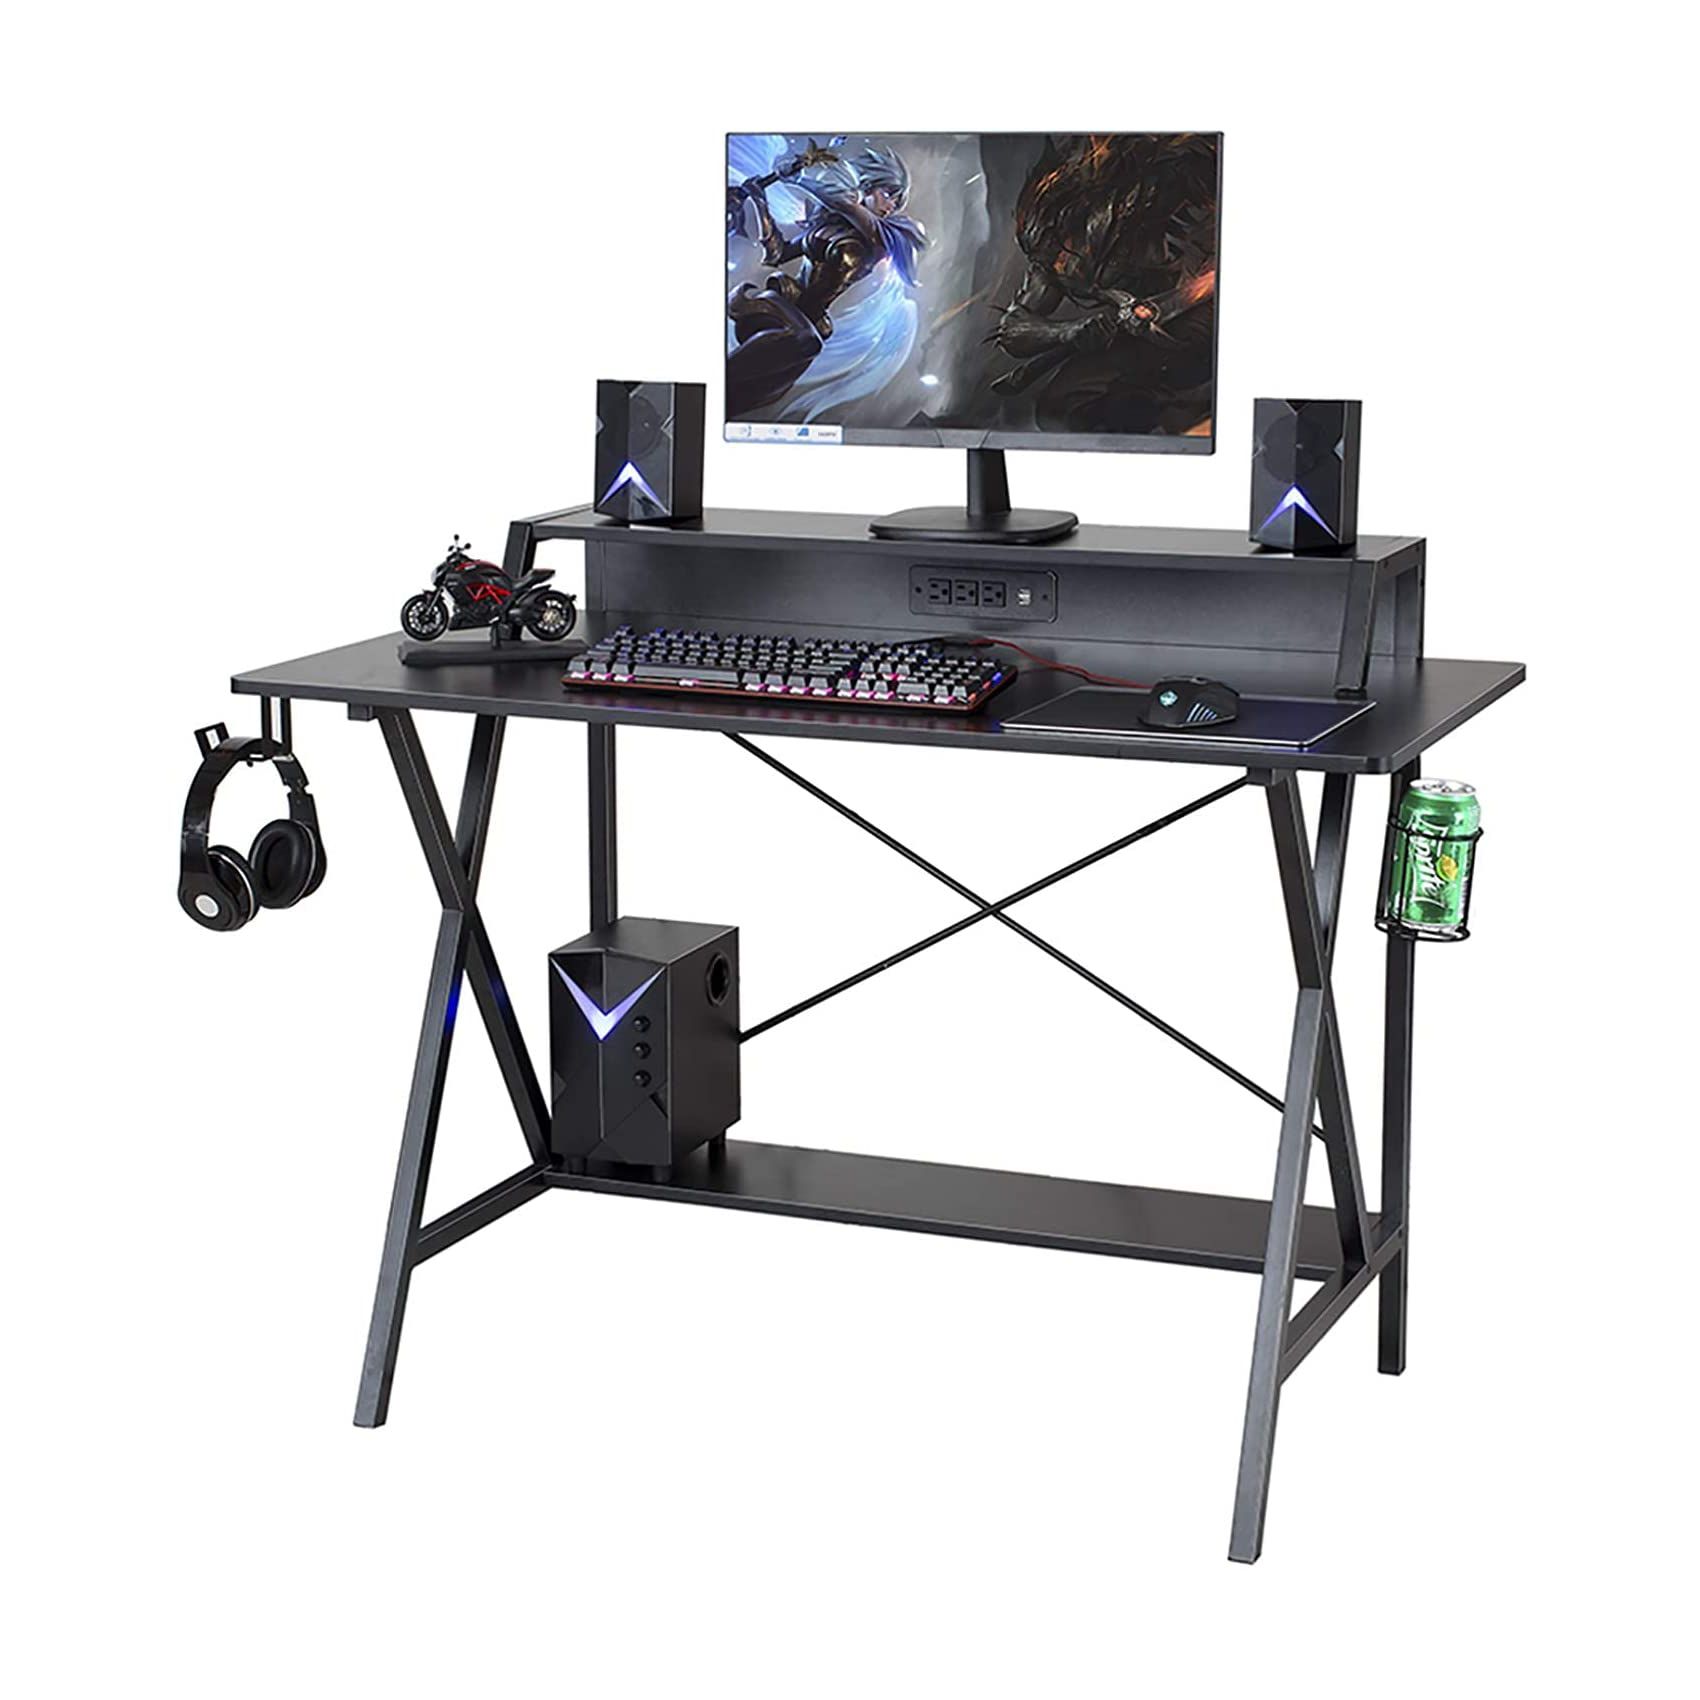 SEDETA 47-inch Gaming Desk 02